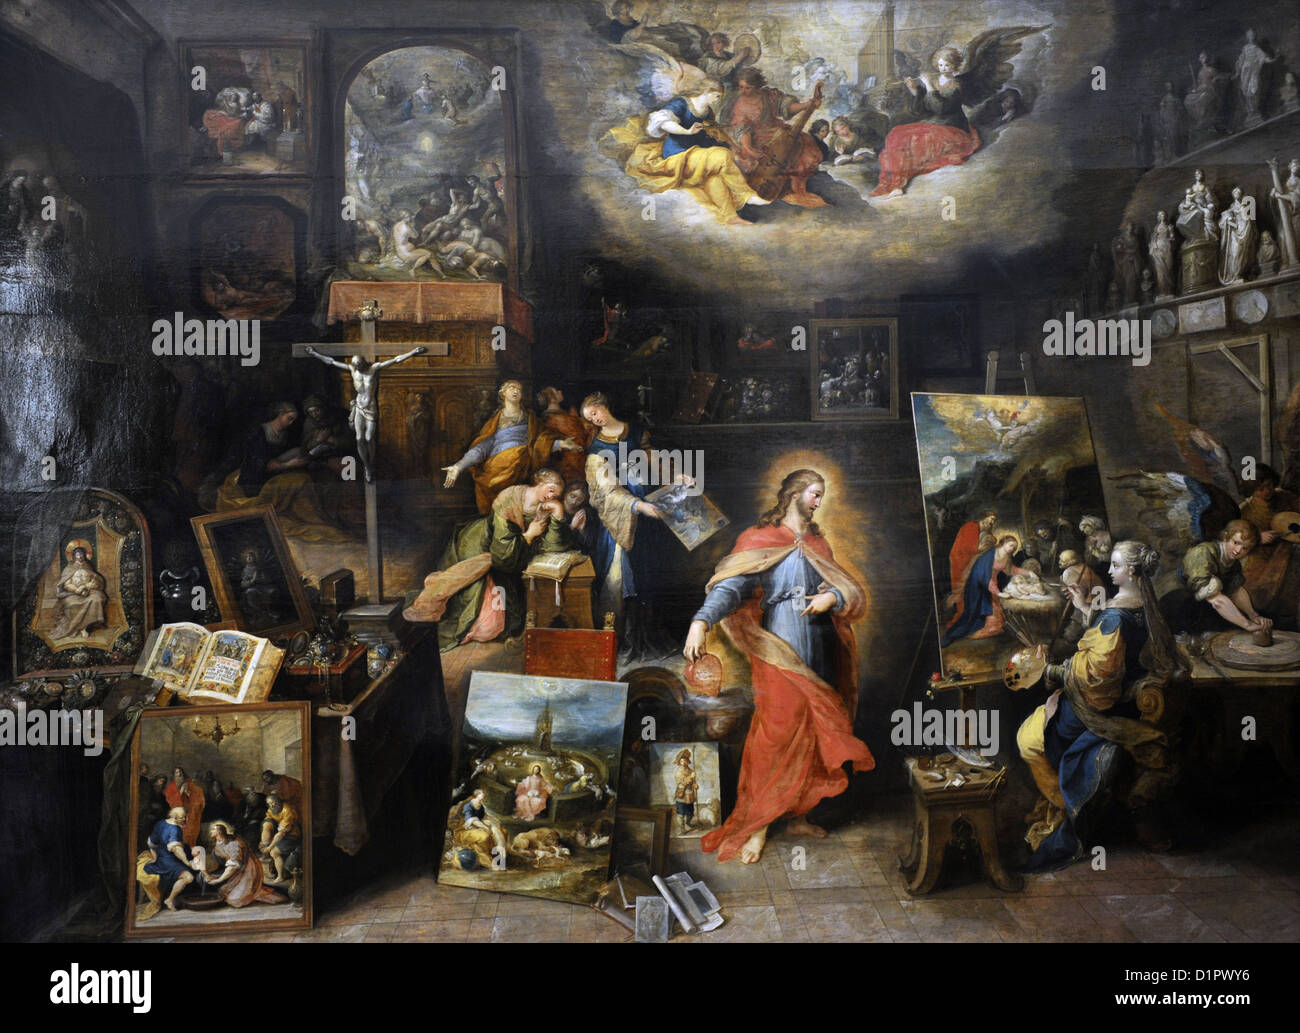 Frans Francken le jeune (1581-1642). Peintre flamand. Le Christ dans le studio. Musée des beaux-arts de Budapest. La Hongrie. Banque D'Images